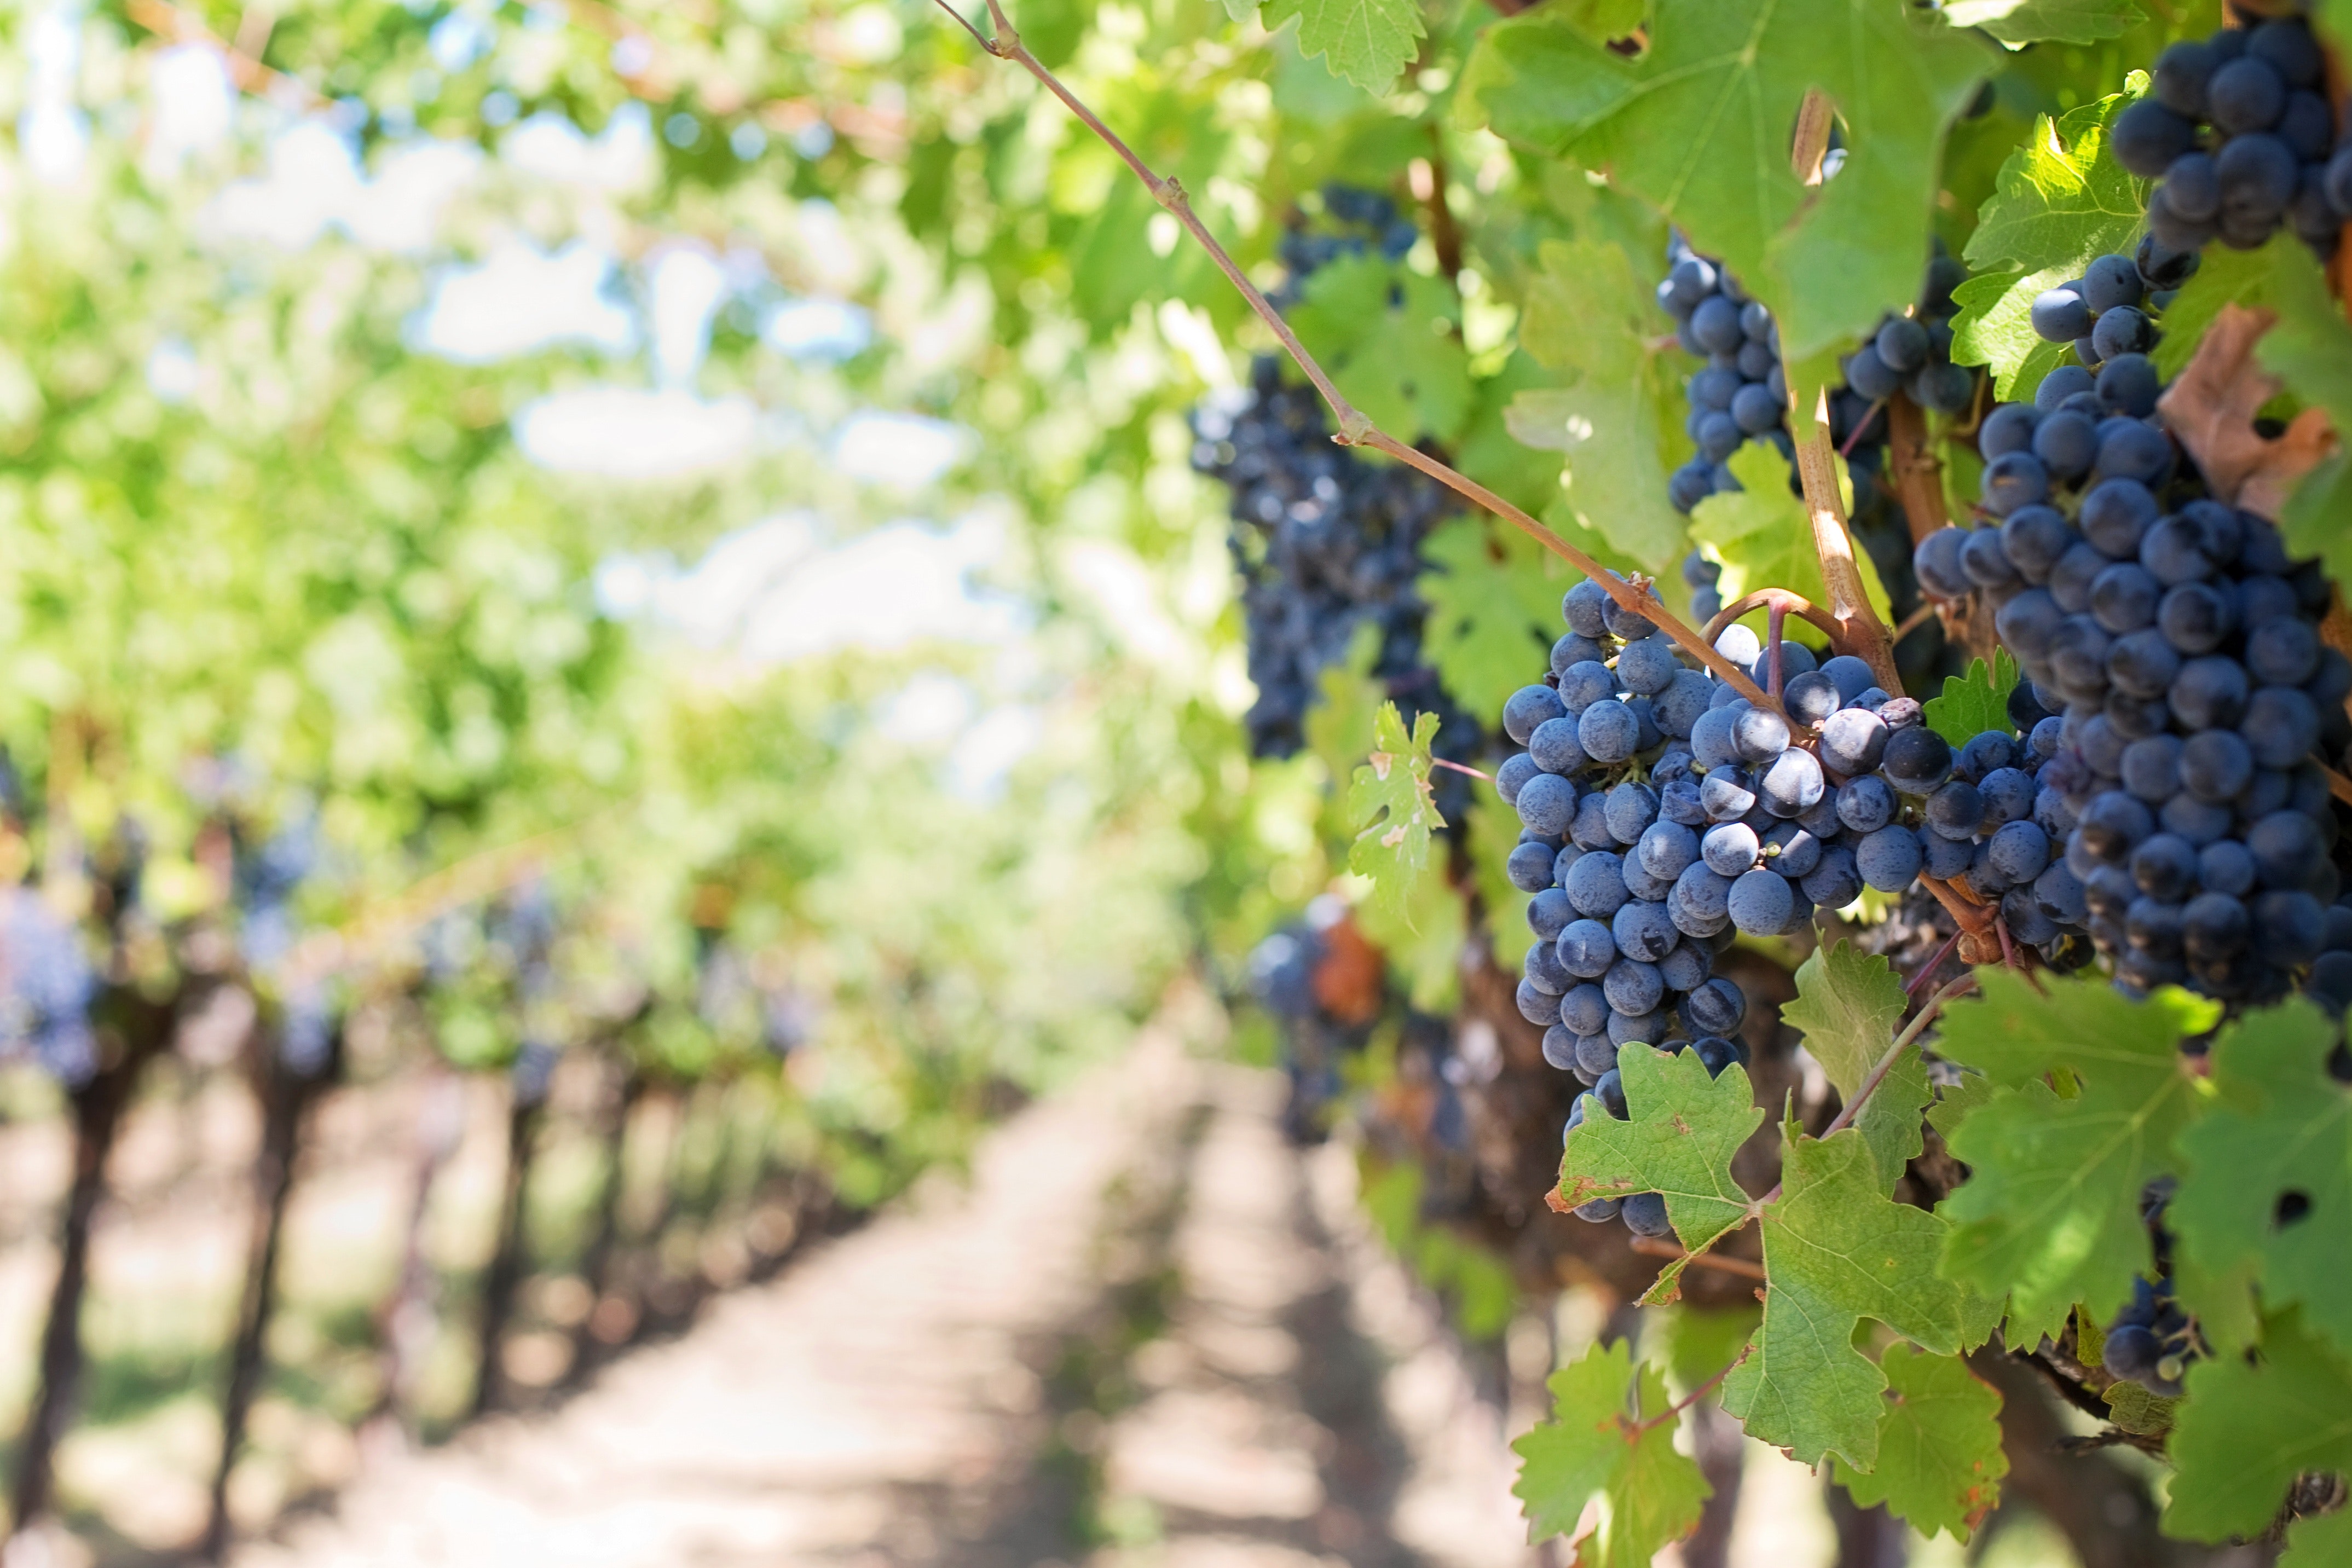 Grapes on vineyard during daytime photo